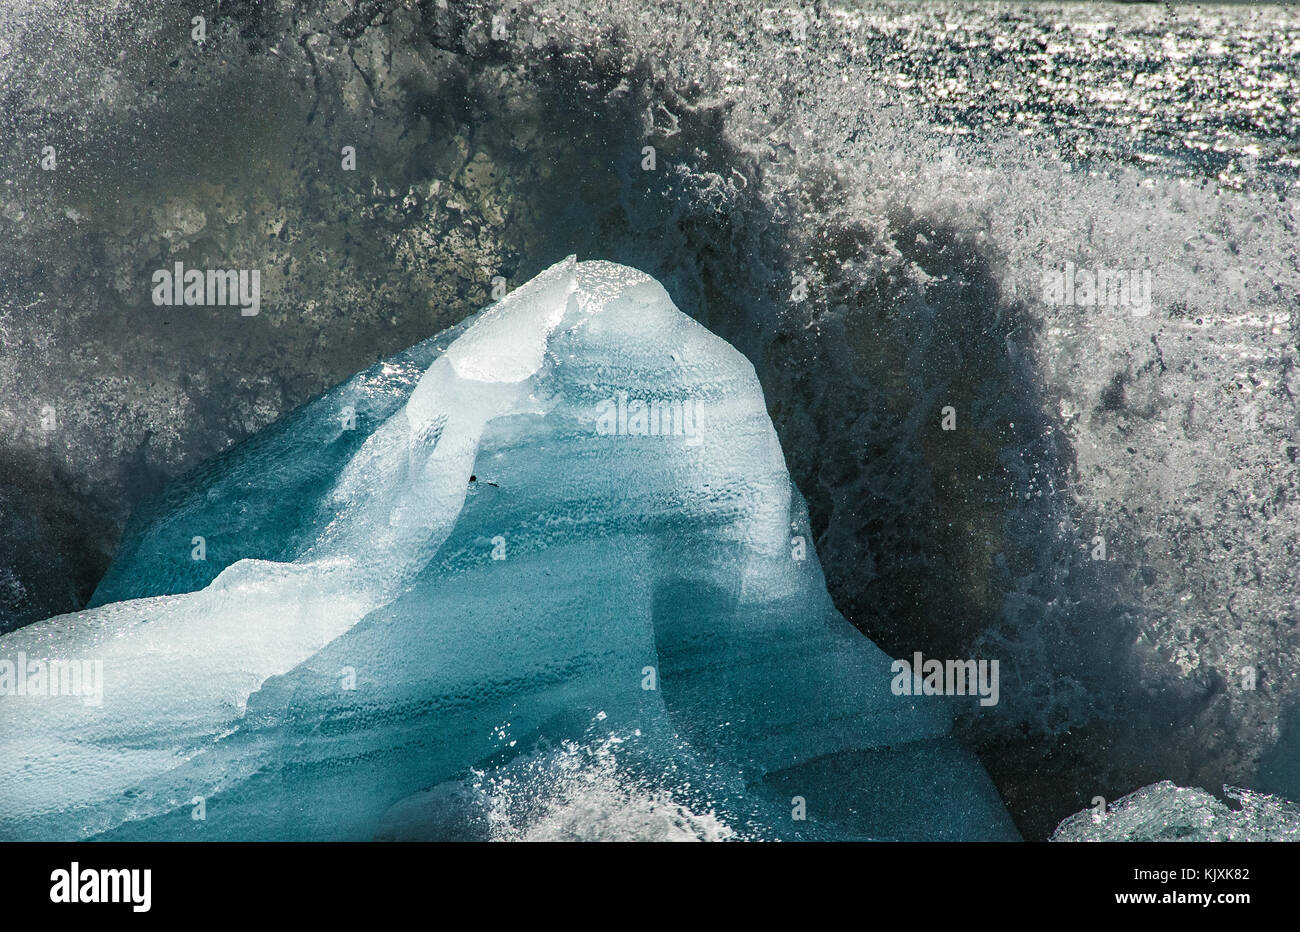 Les vagues crash et créer des gerbes de mousse sur les blocs de glace rejetée sur la plage près de l'Islande, Jokulsarlon Banque D'Images